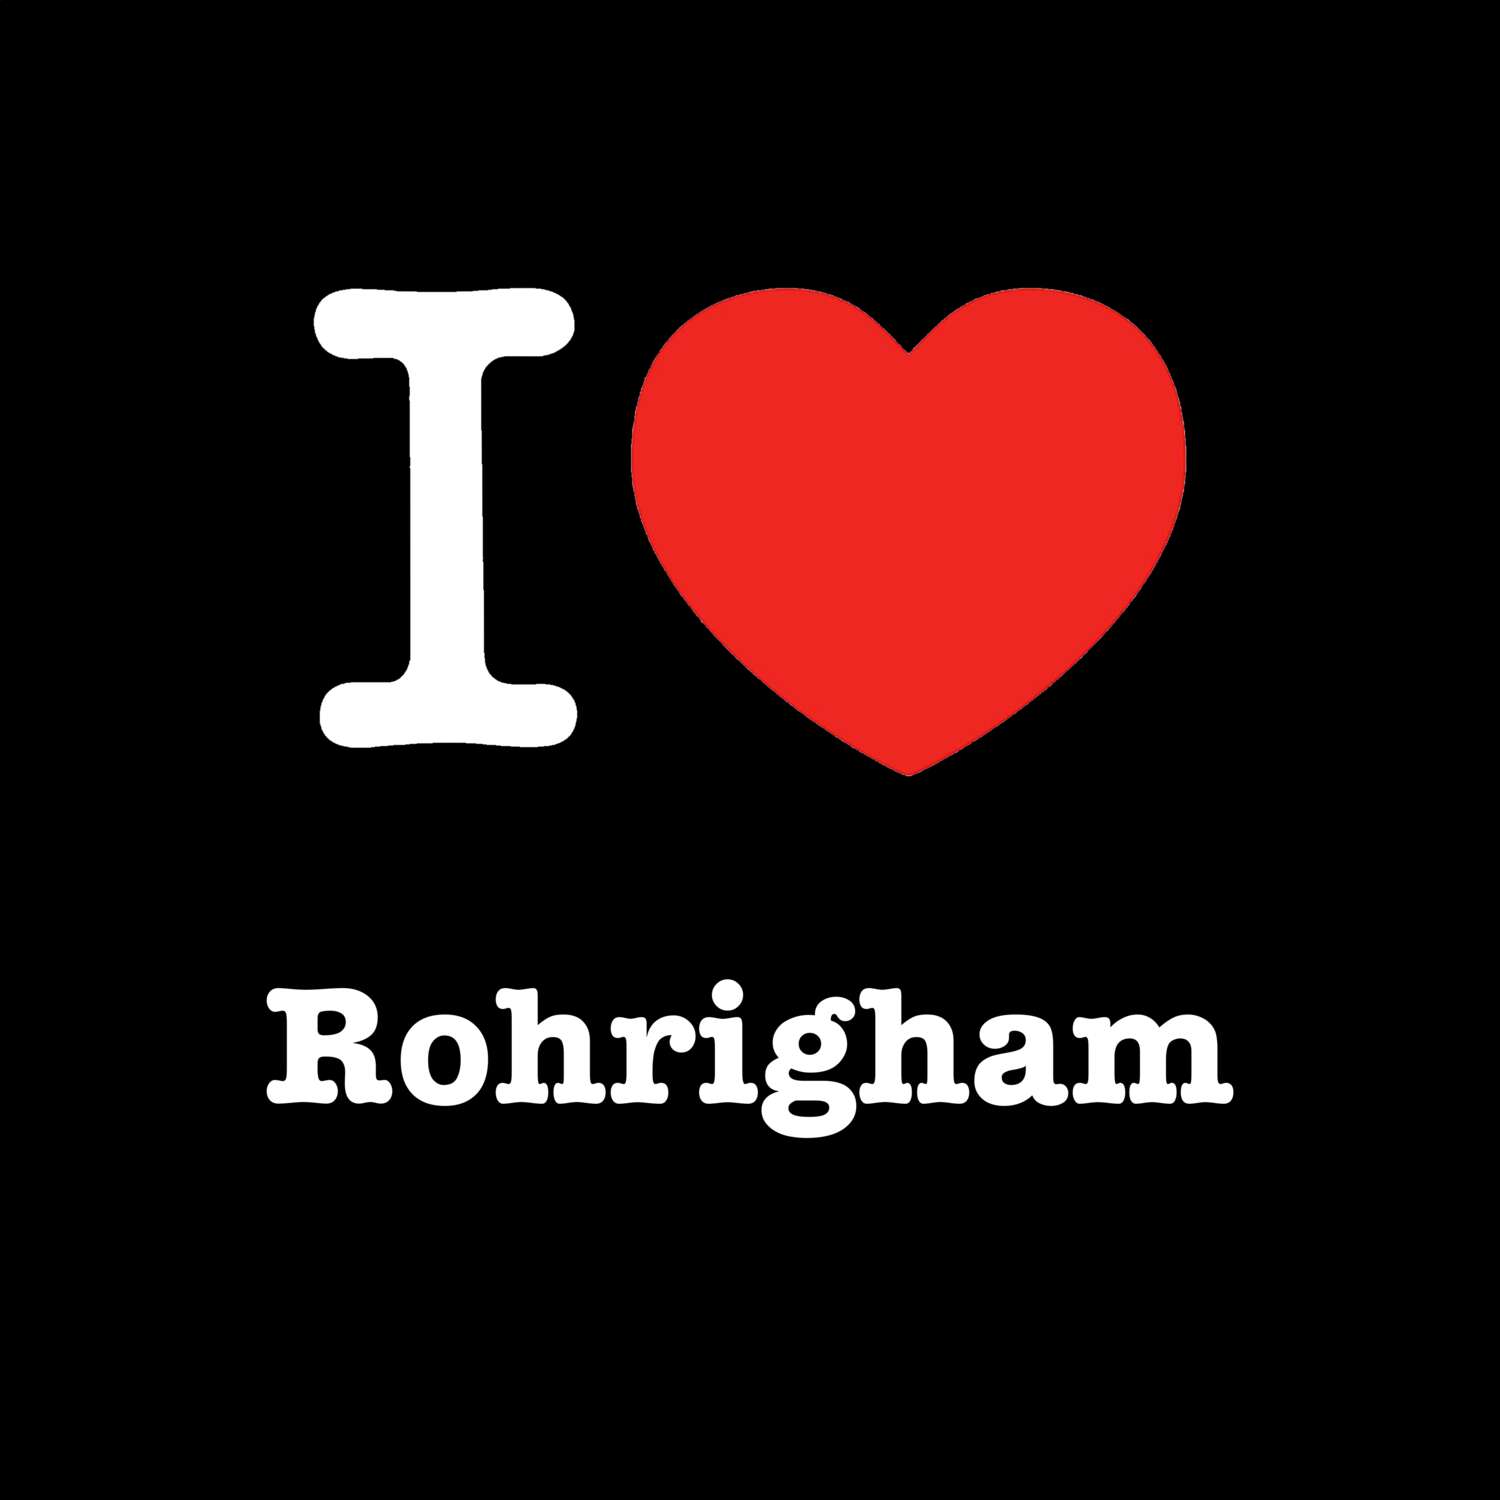 Rohrigham T-Shirt »I love«